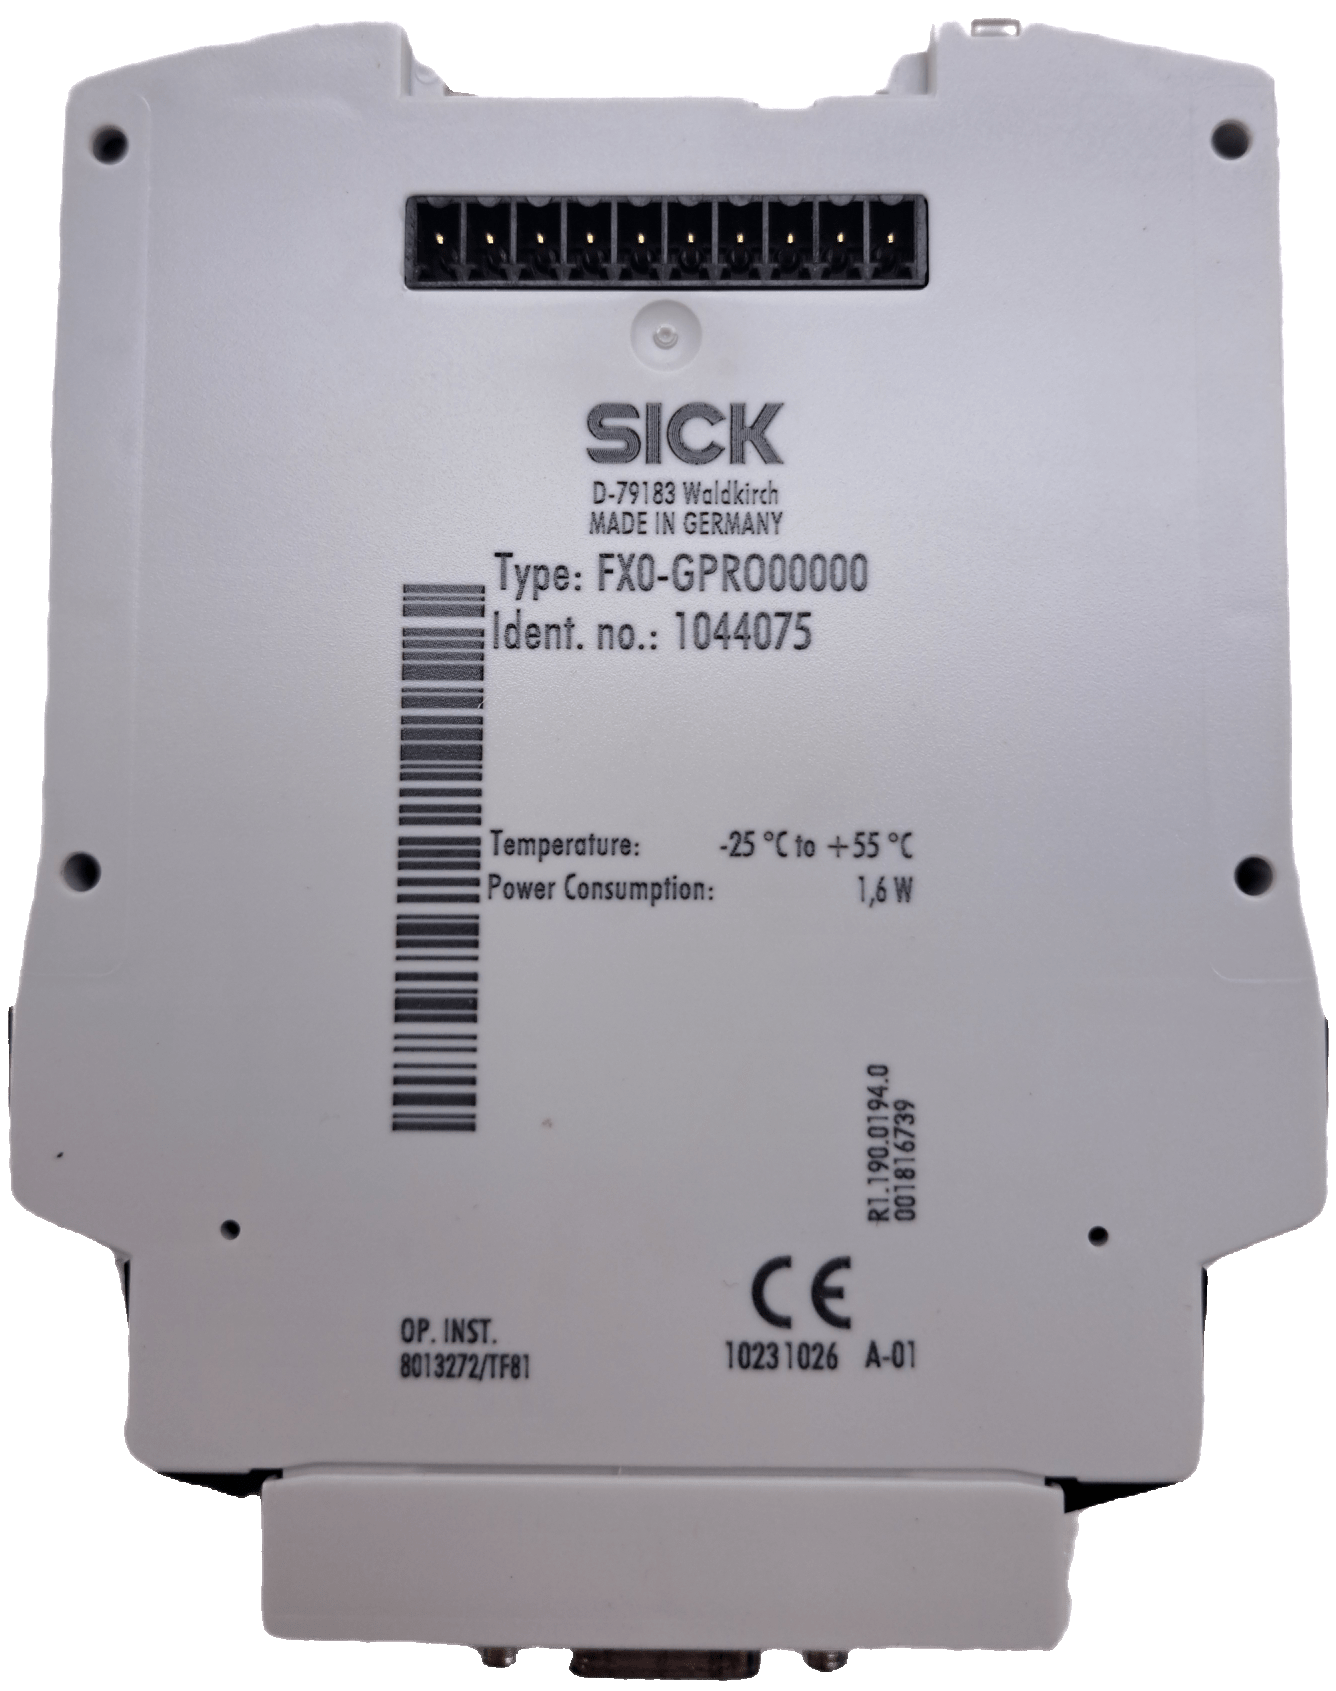 Sick Sicherheitssteuerungen: Flexi Soft 1044075 - #product_category# | Klenk Maschinenhandel